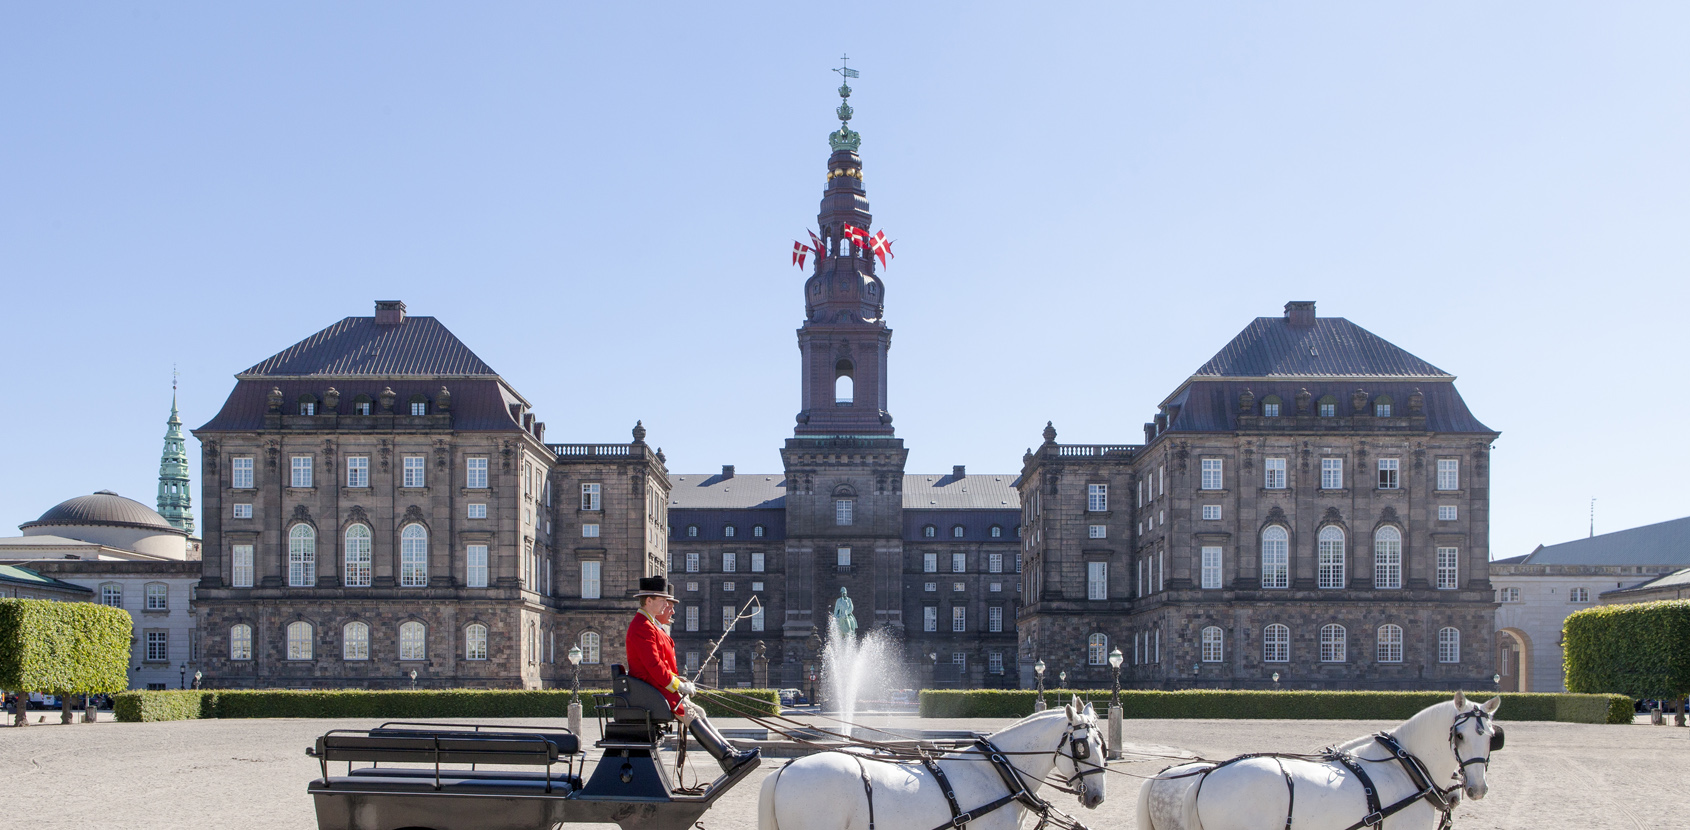 Christiansborg Slot - Slotte og haver - Kongelige Slotte